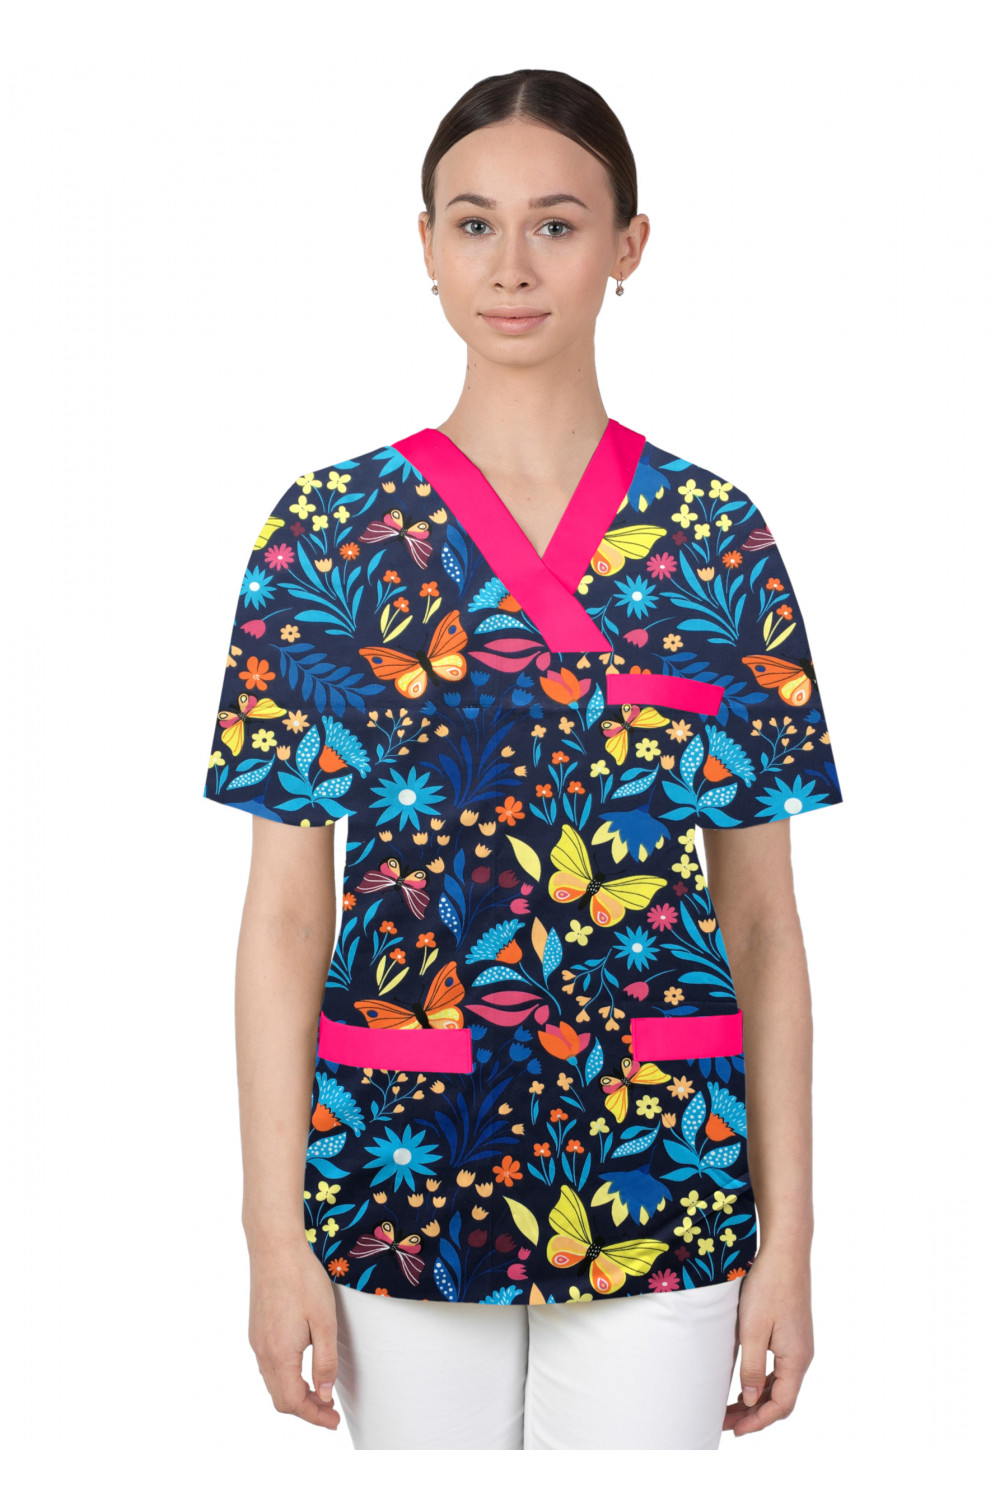 Bluza medyczna we wzorki kolorowa damska M-074G motylki kolorowe na łące na granatowym tle